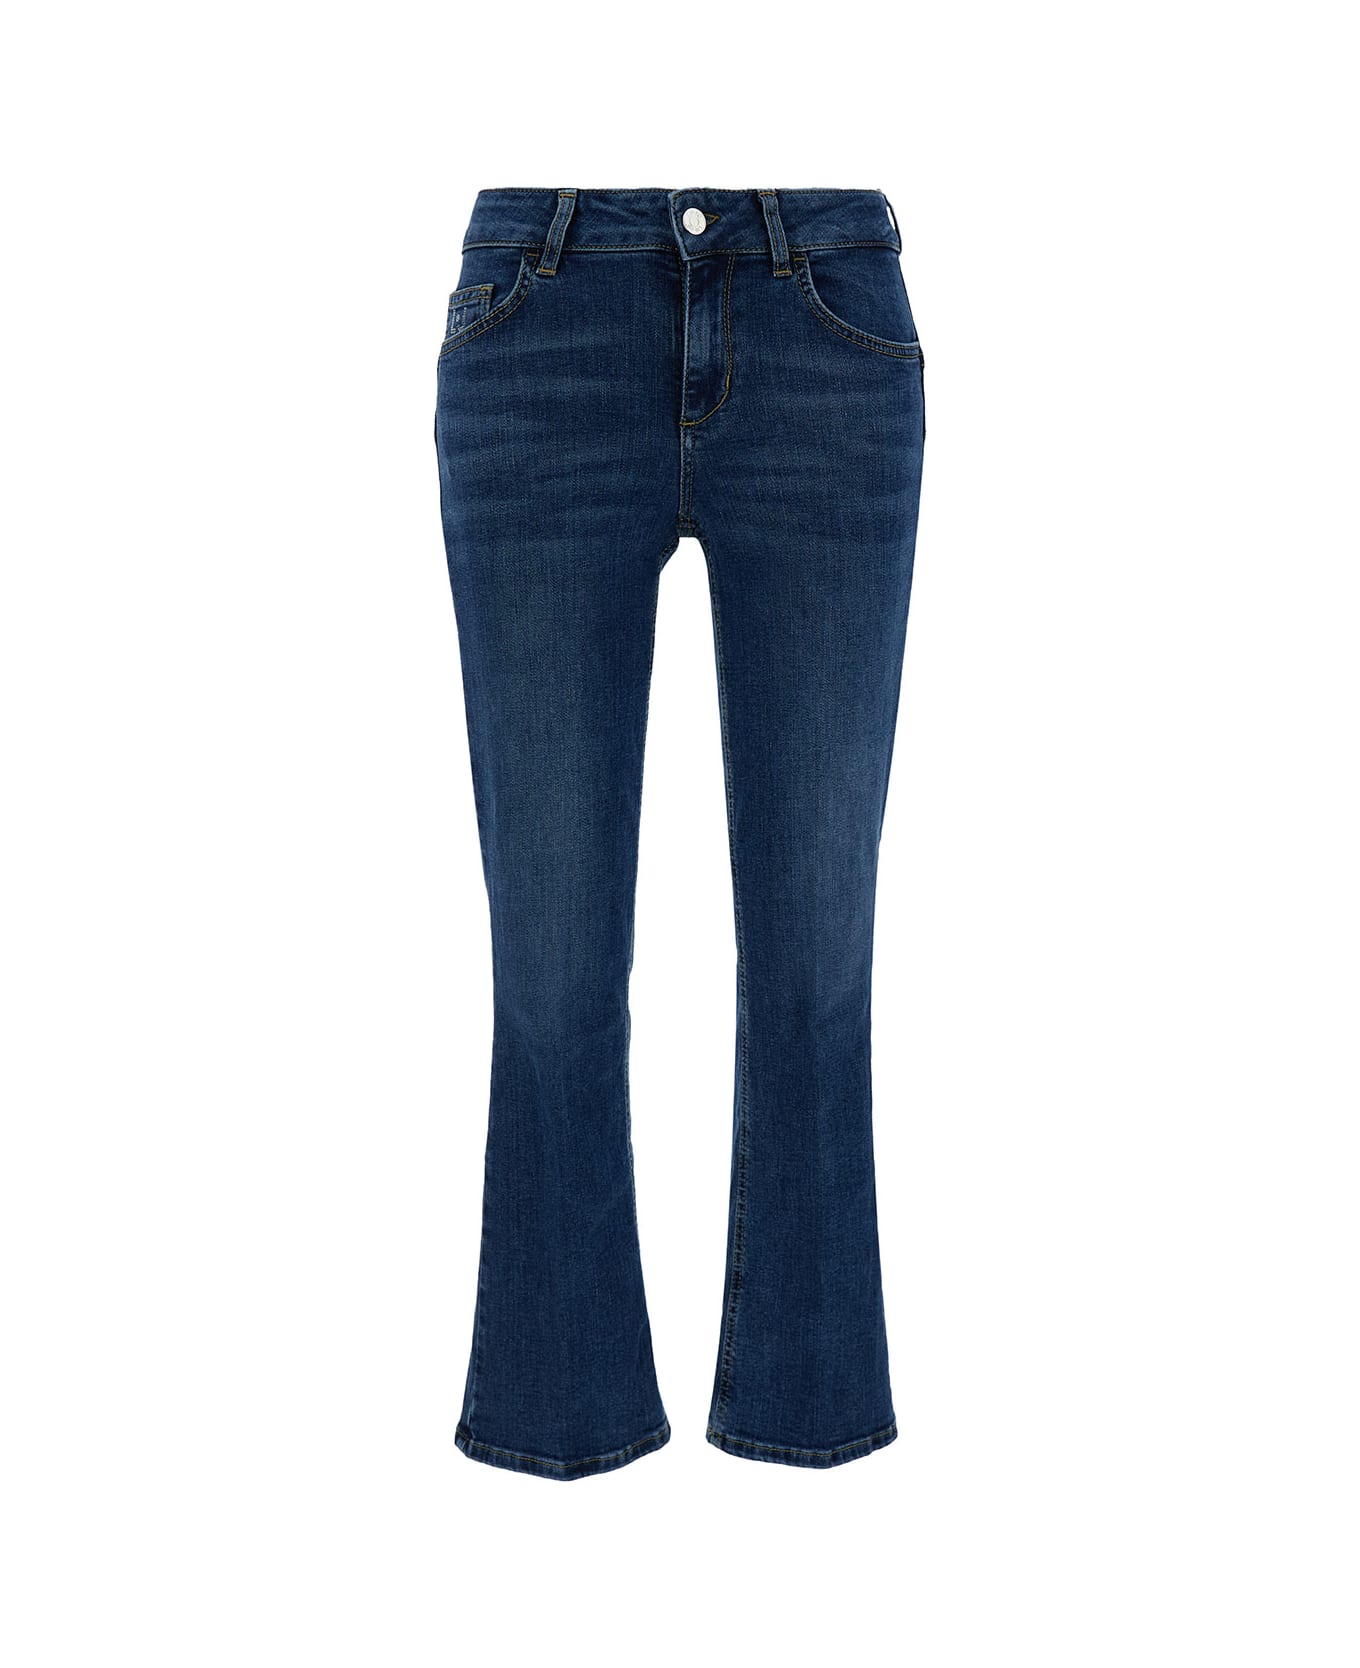 Liu-Jo Blue Slightly Flared Five Pocket Jeans In Cotton Denim Woman - Blu